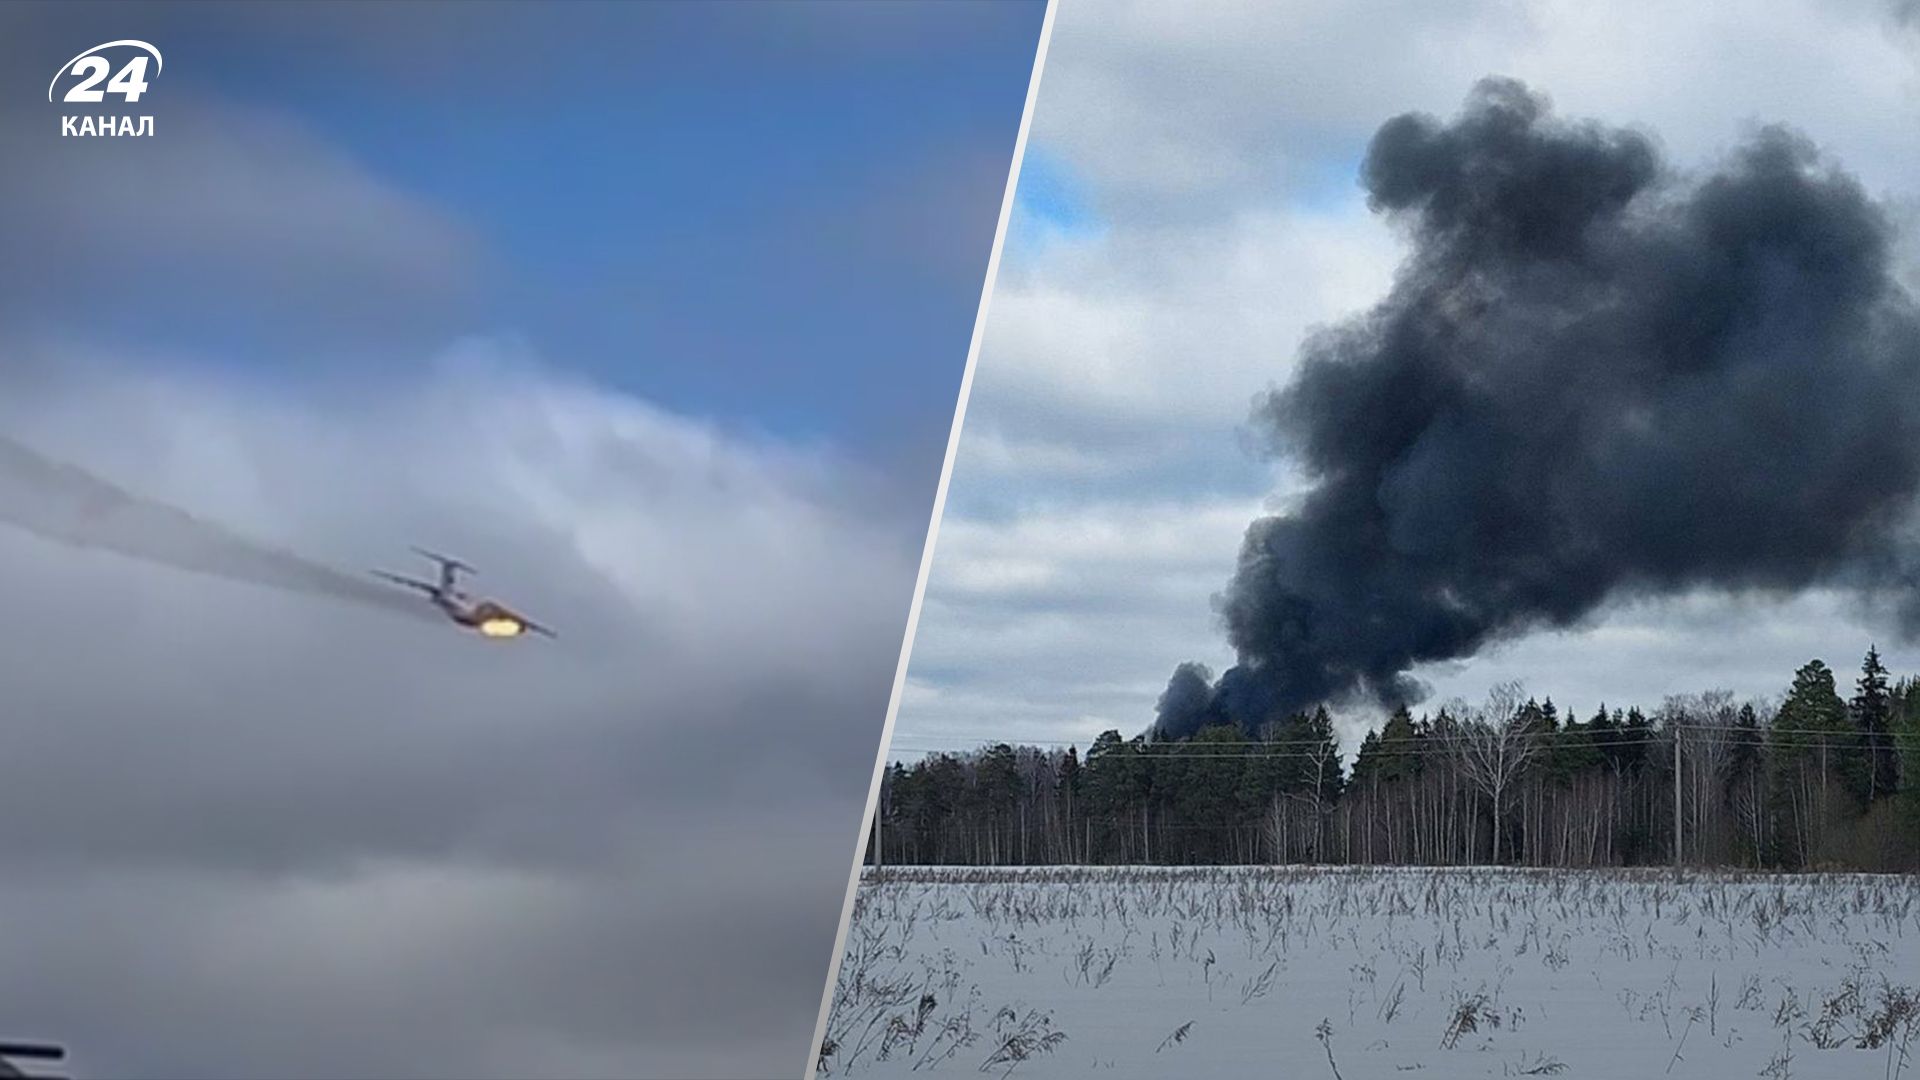 В российском Иваново упал самолет, вероятно, это Ил-76 - СМИ - 24 Канал